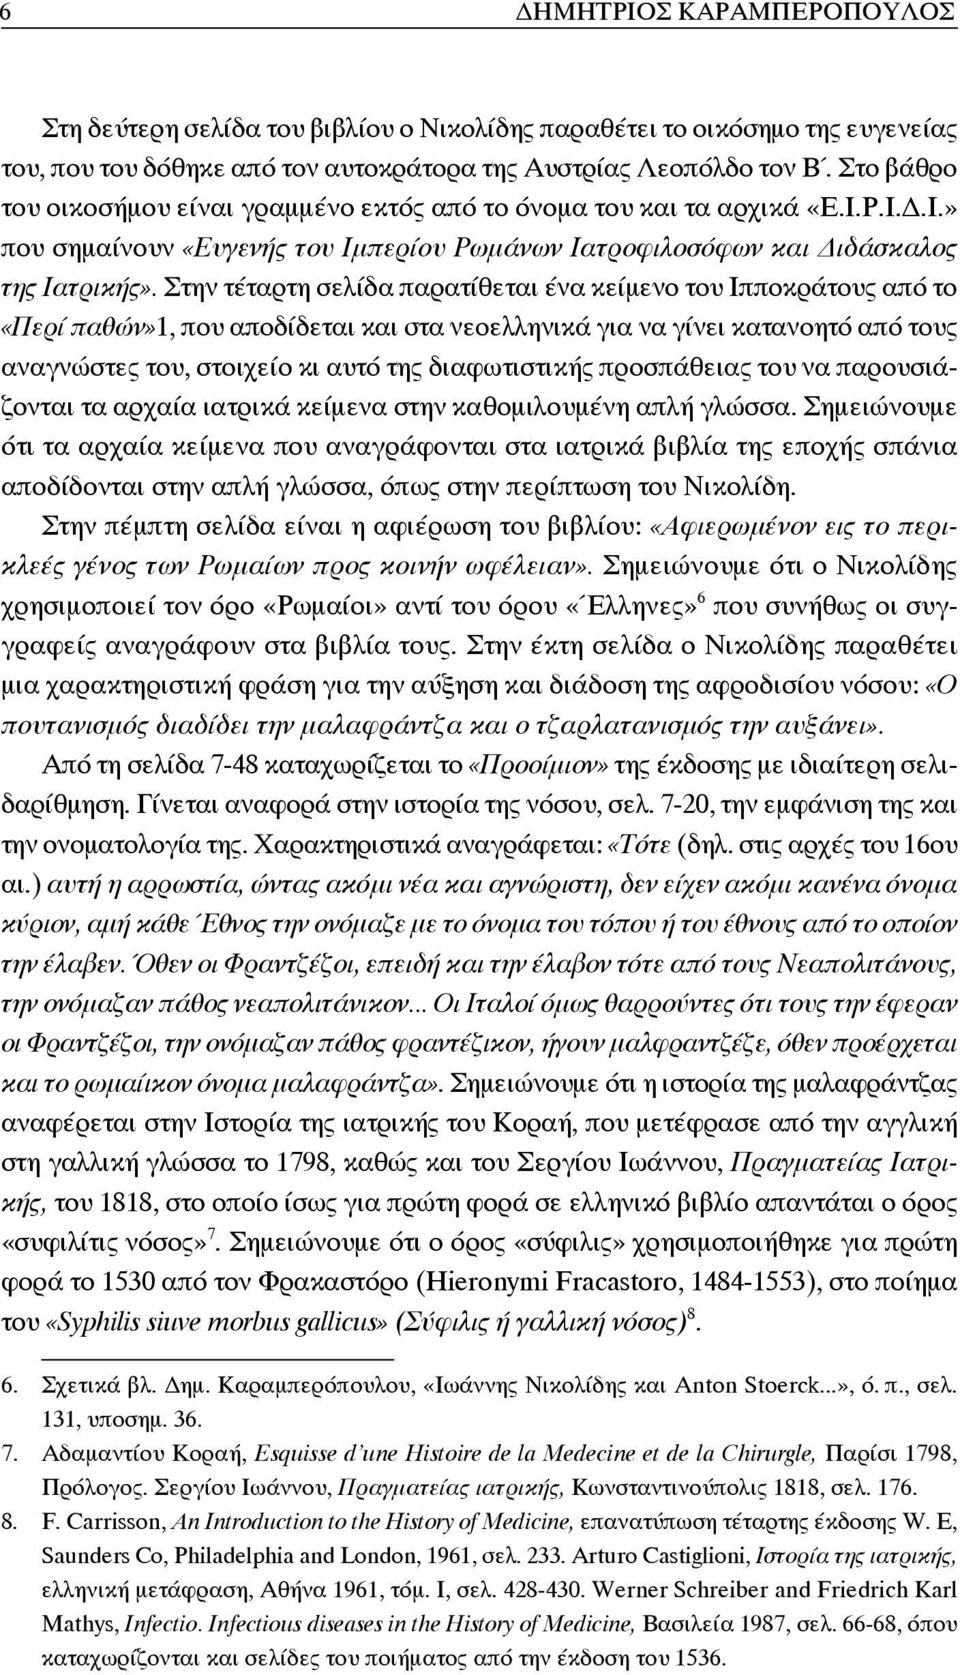 Στην τέταρτη σελίδα παρατίθεται ένα κείμενο του Ιπποκράτους από το «Περί παθών»1, που αποδίδεται και στα νεοελληνικά για να γίνει κατανοητό από τους αναγνώστες του, στοιχείο κι αυτό της διαφωτιστικής